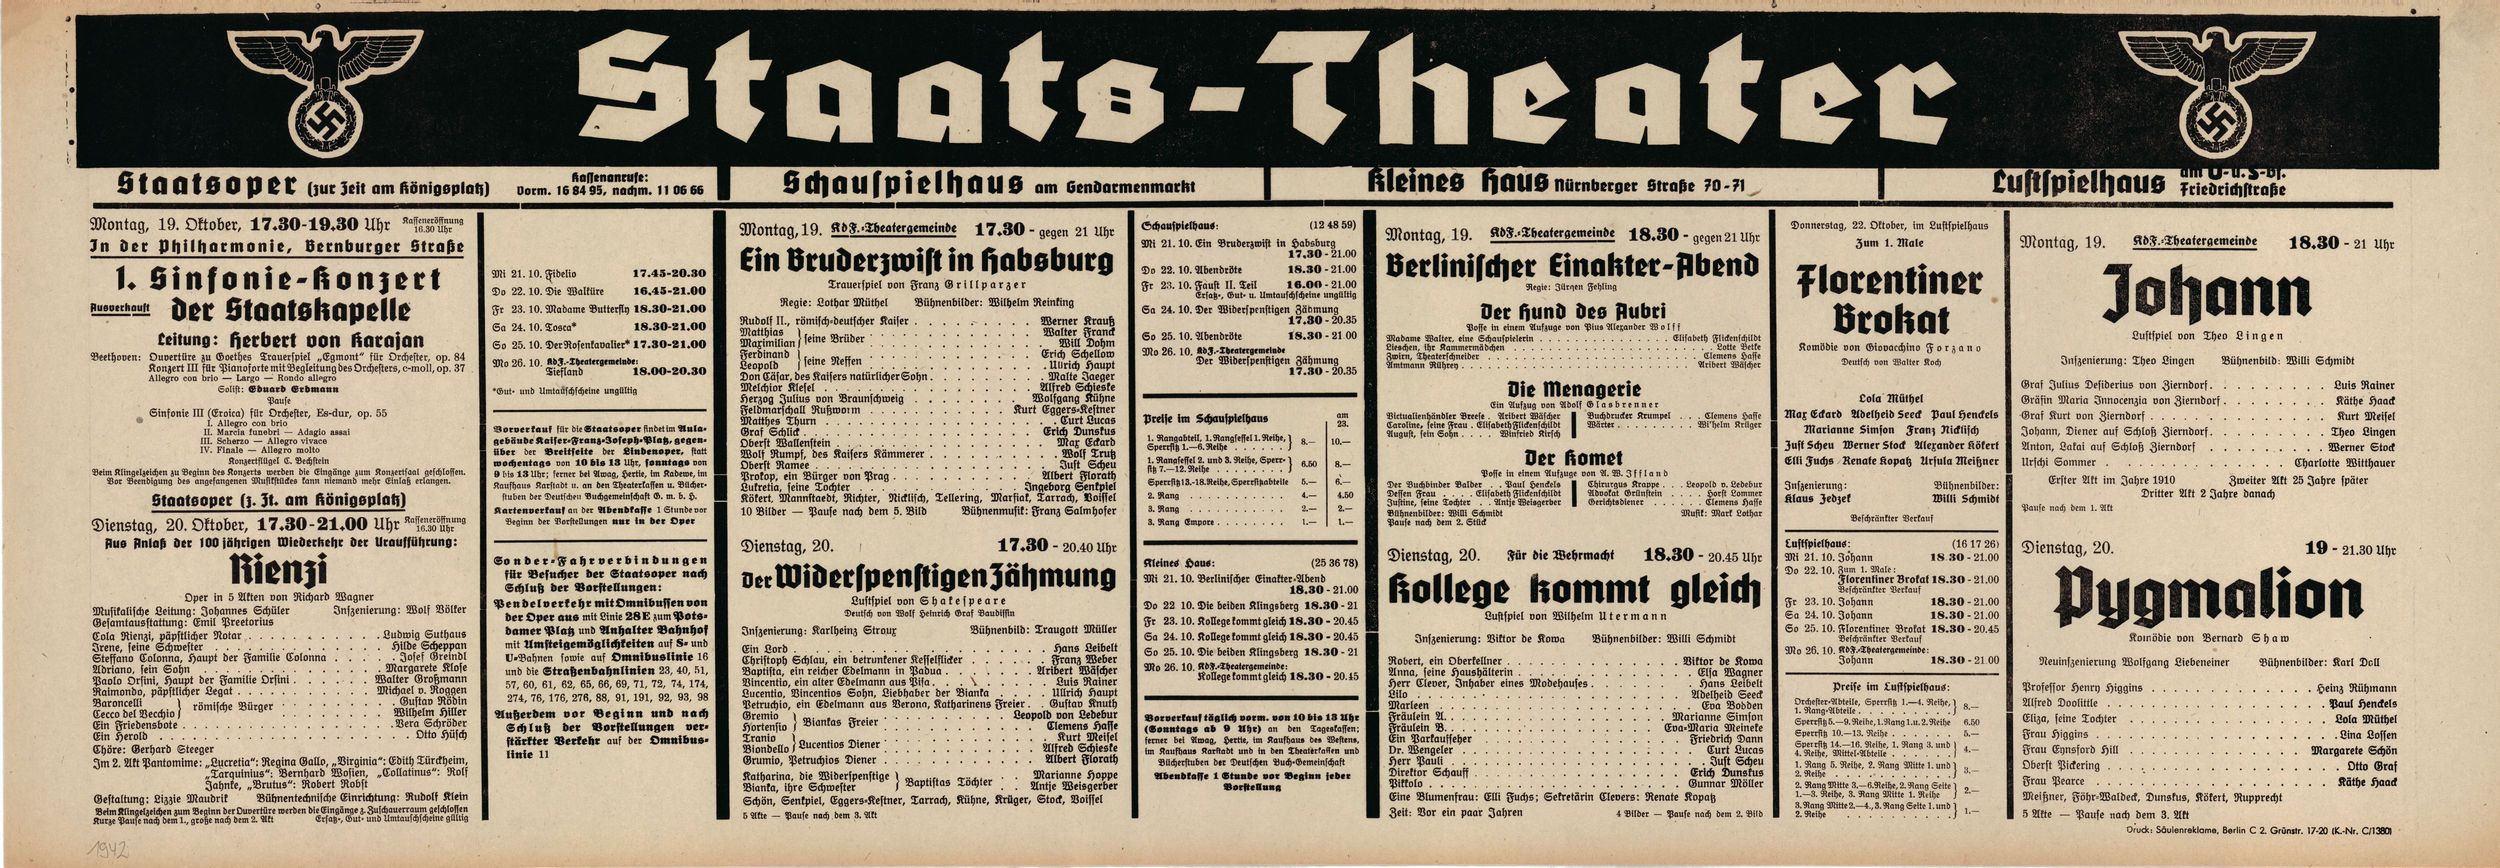 Karajan, Herbert von - Berlin Staats-Oper Playbill Lot 1942 - Tamino